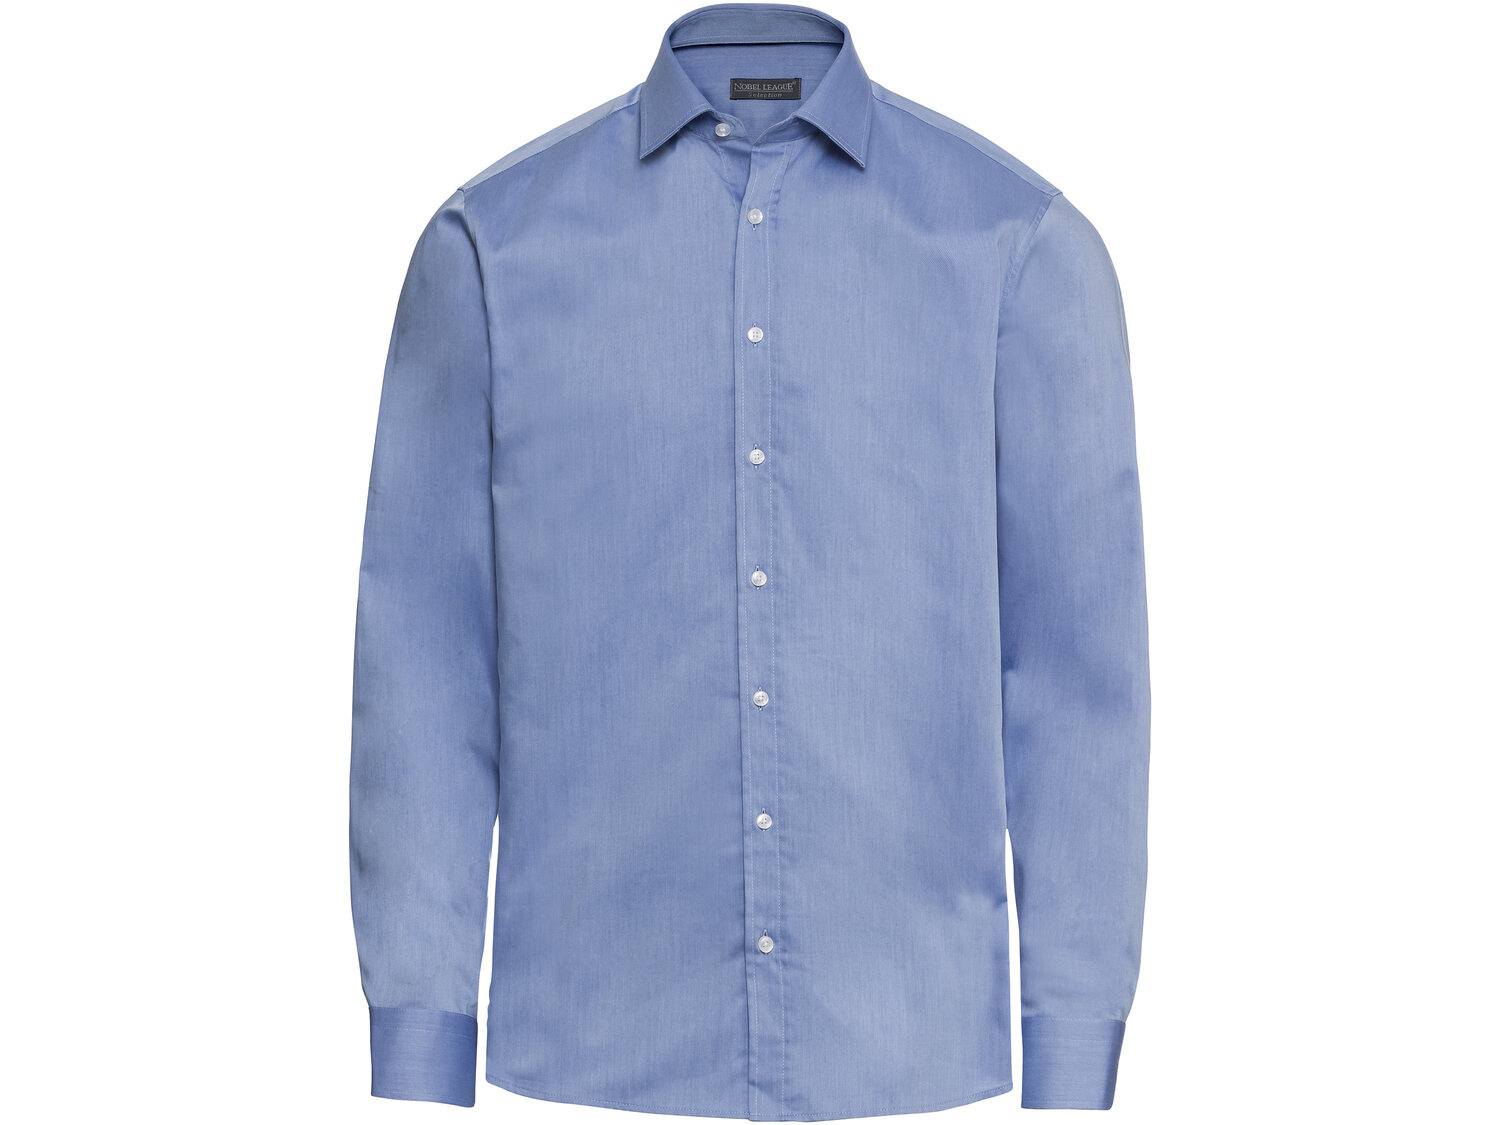 Koszula , cena 49,99 PLN 
- 100% bawełny
- rozmiary: 39-43
- slim fit - krój ...